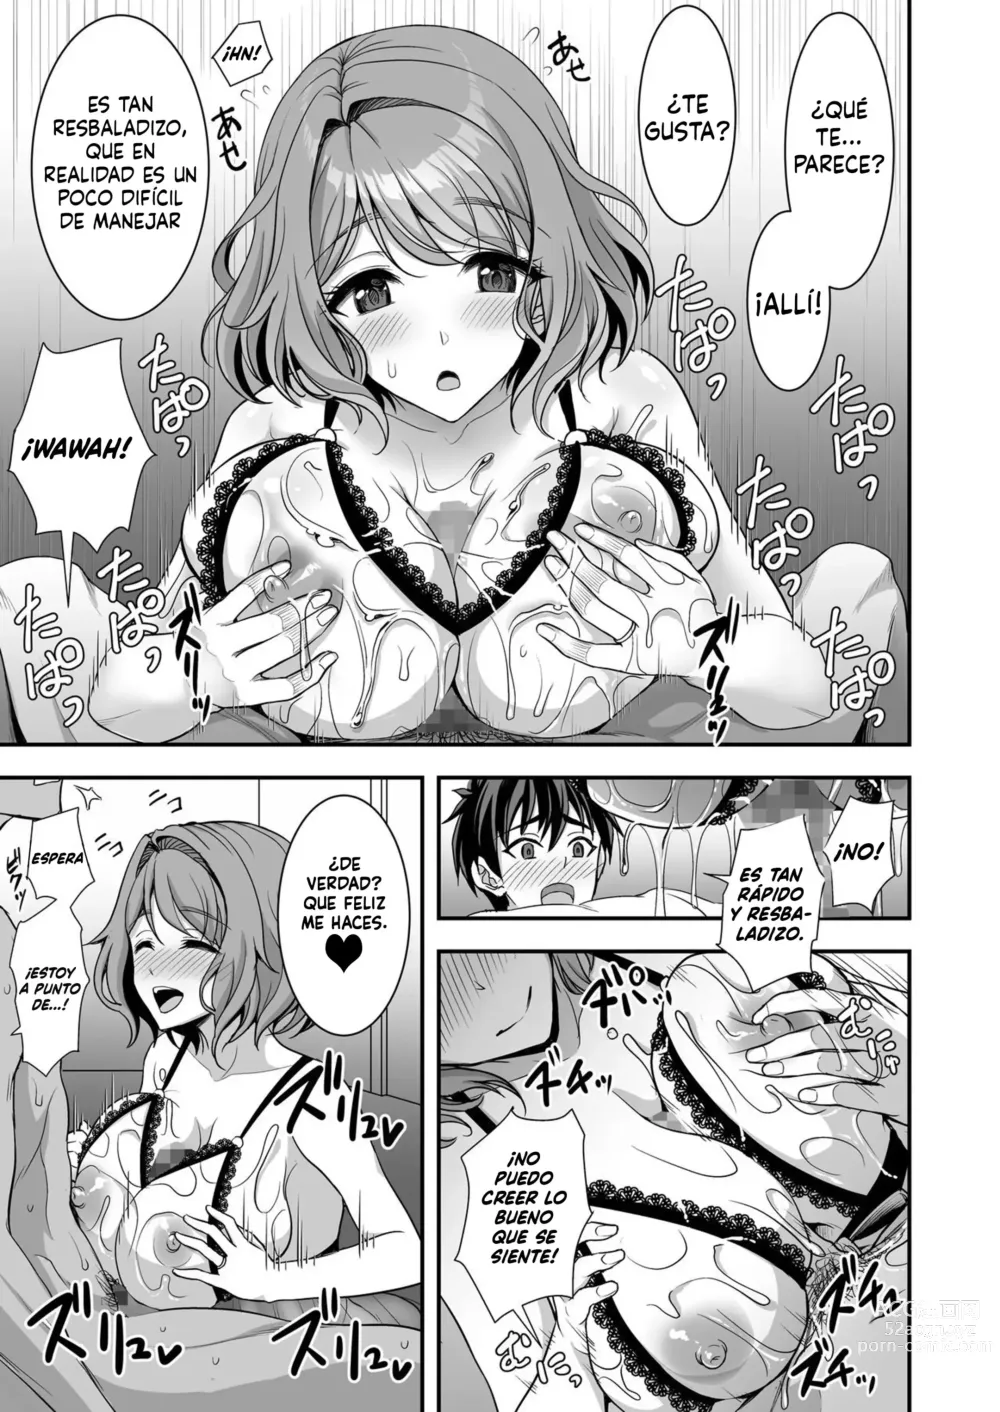 Page 35 of doujinshi La leve trampa de una esposa ~La engañé pero estoy totalmente bajo su control~